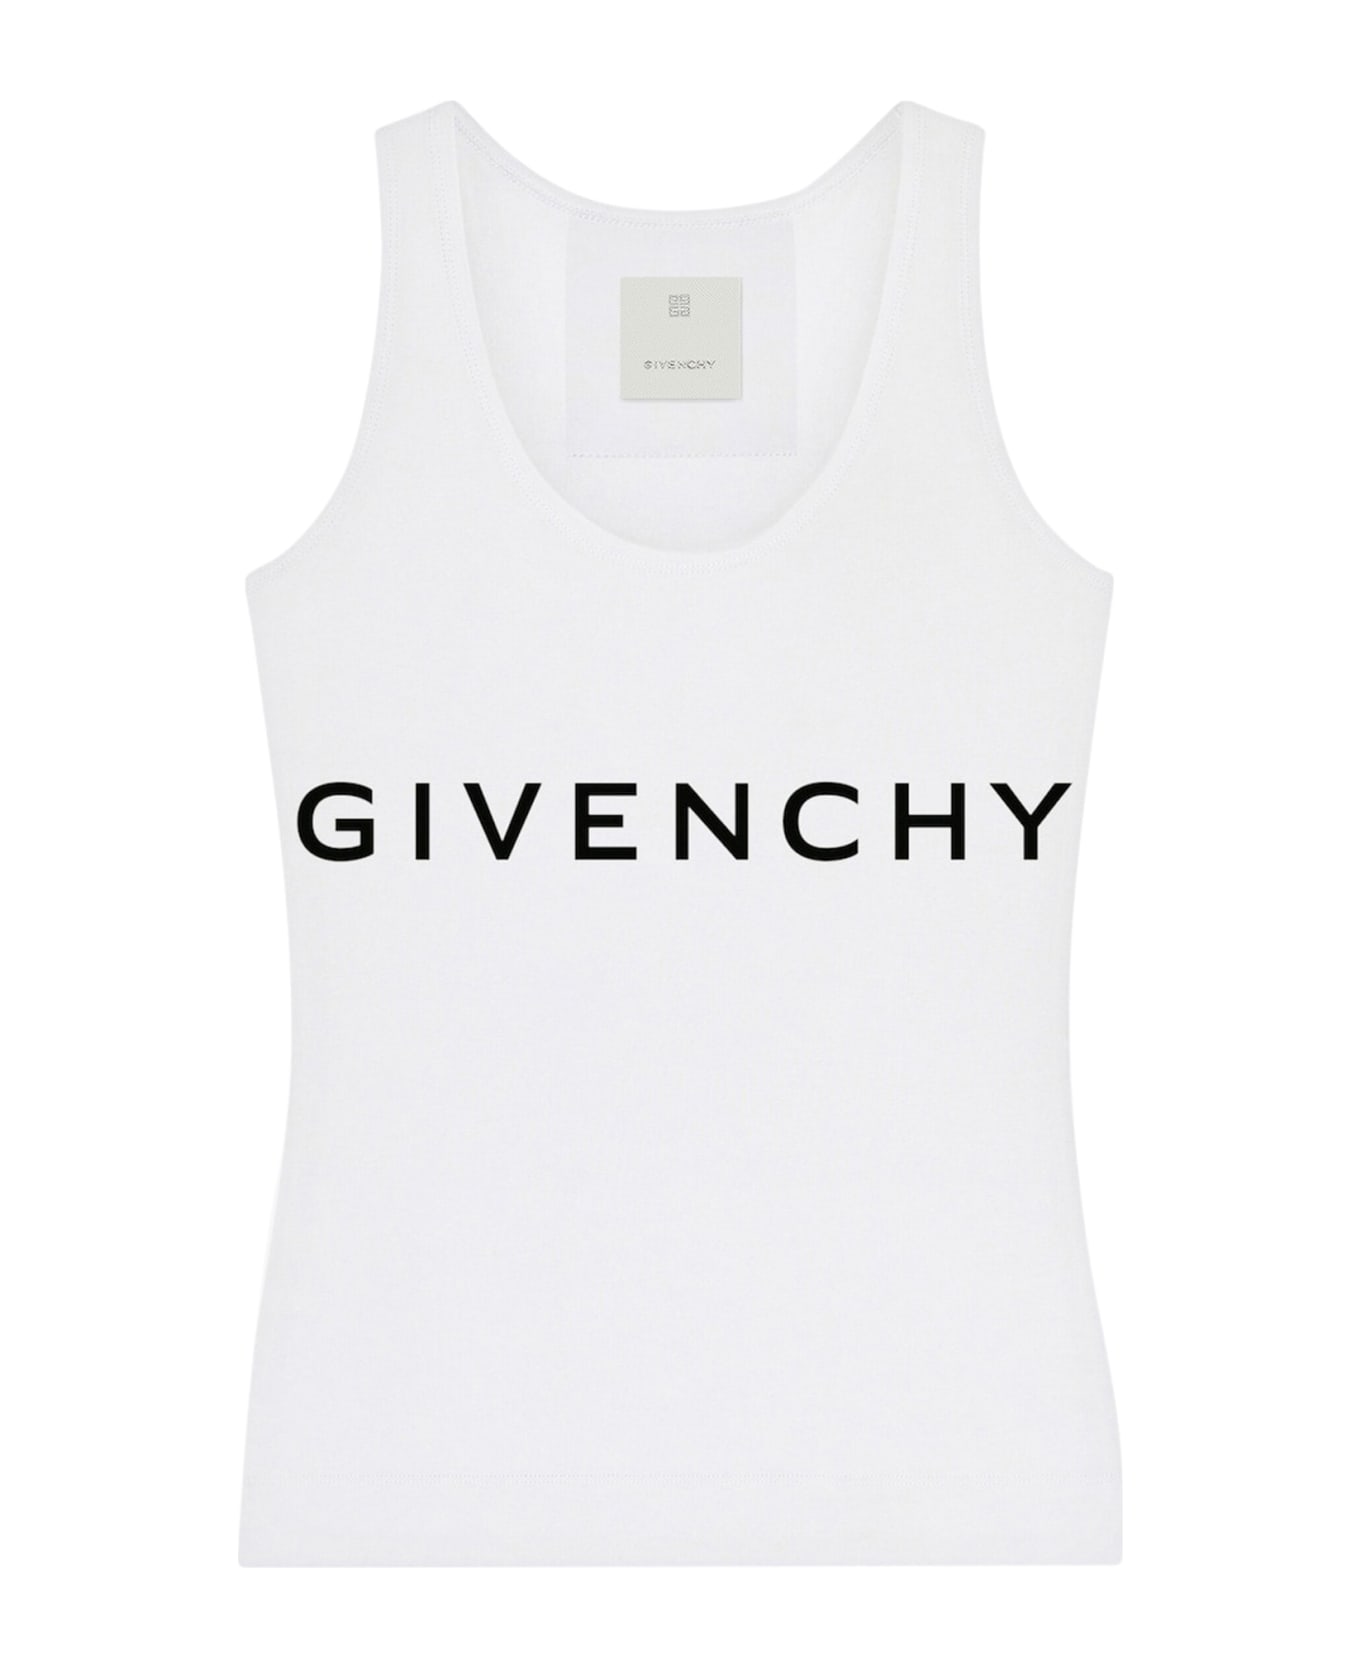 Givenchy Tank Top - White Black